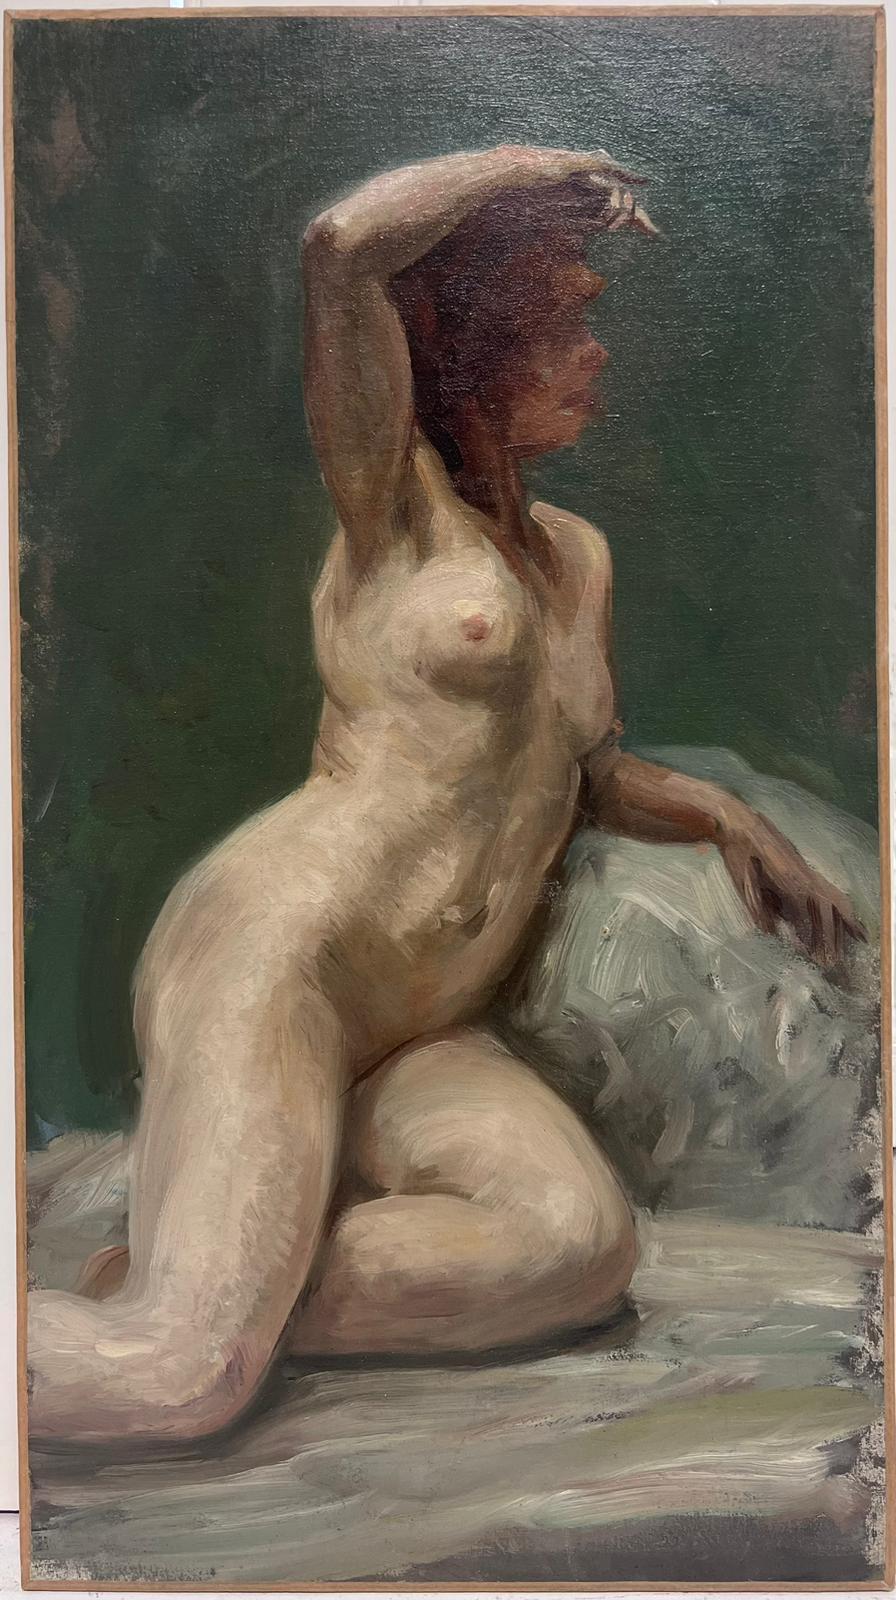 Nude Painting French Impressionist oil - Peinture à l'huile impressionniste française des années 1890, Studio A, portrait d'une femme modèle nue